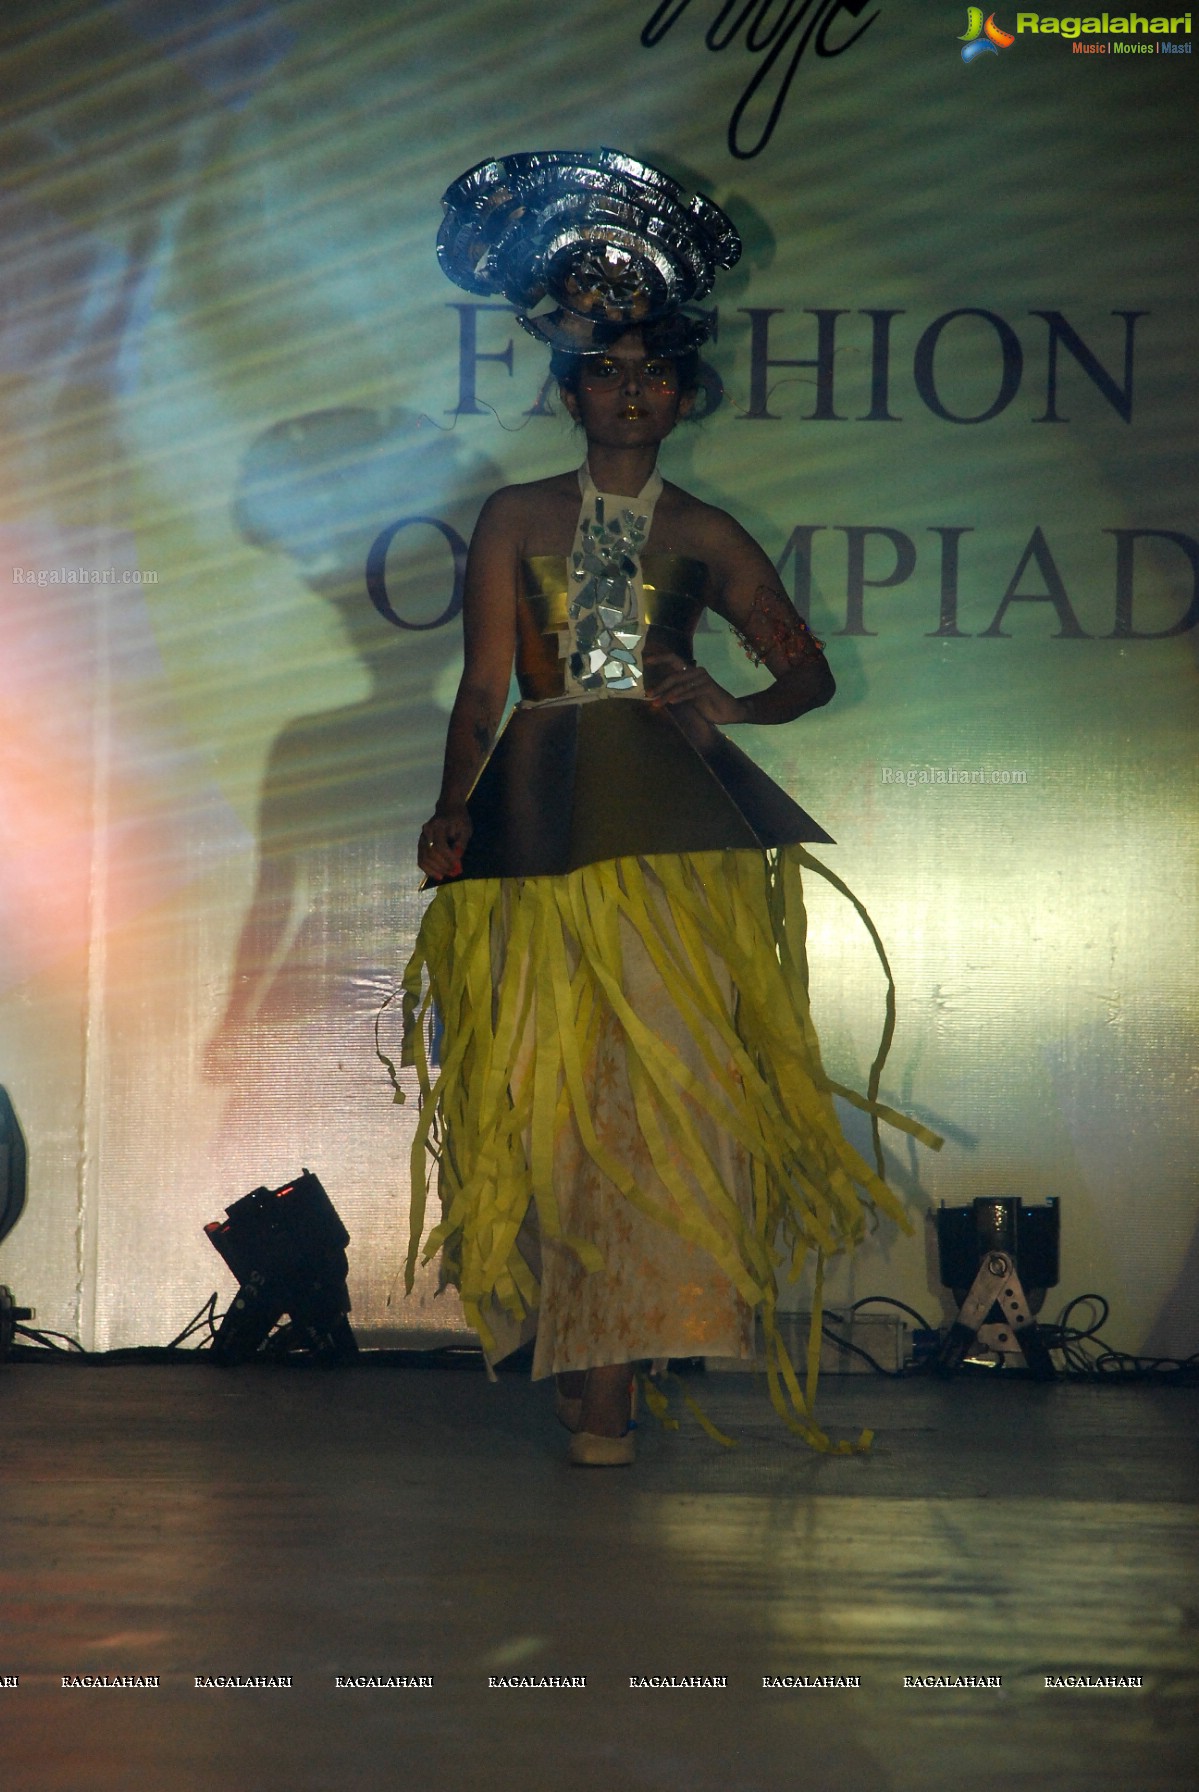 NIFT Fashion Olympiad 2014 (Day 2), Hyderabad